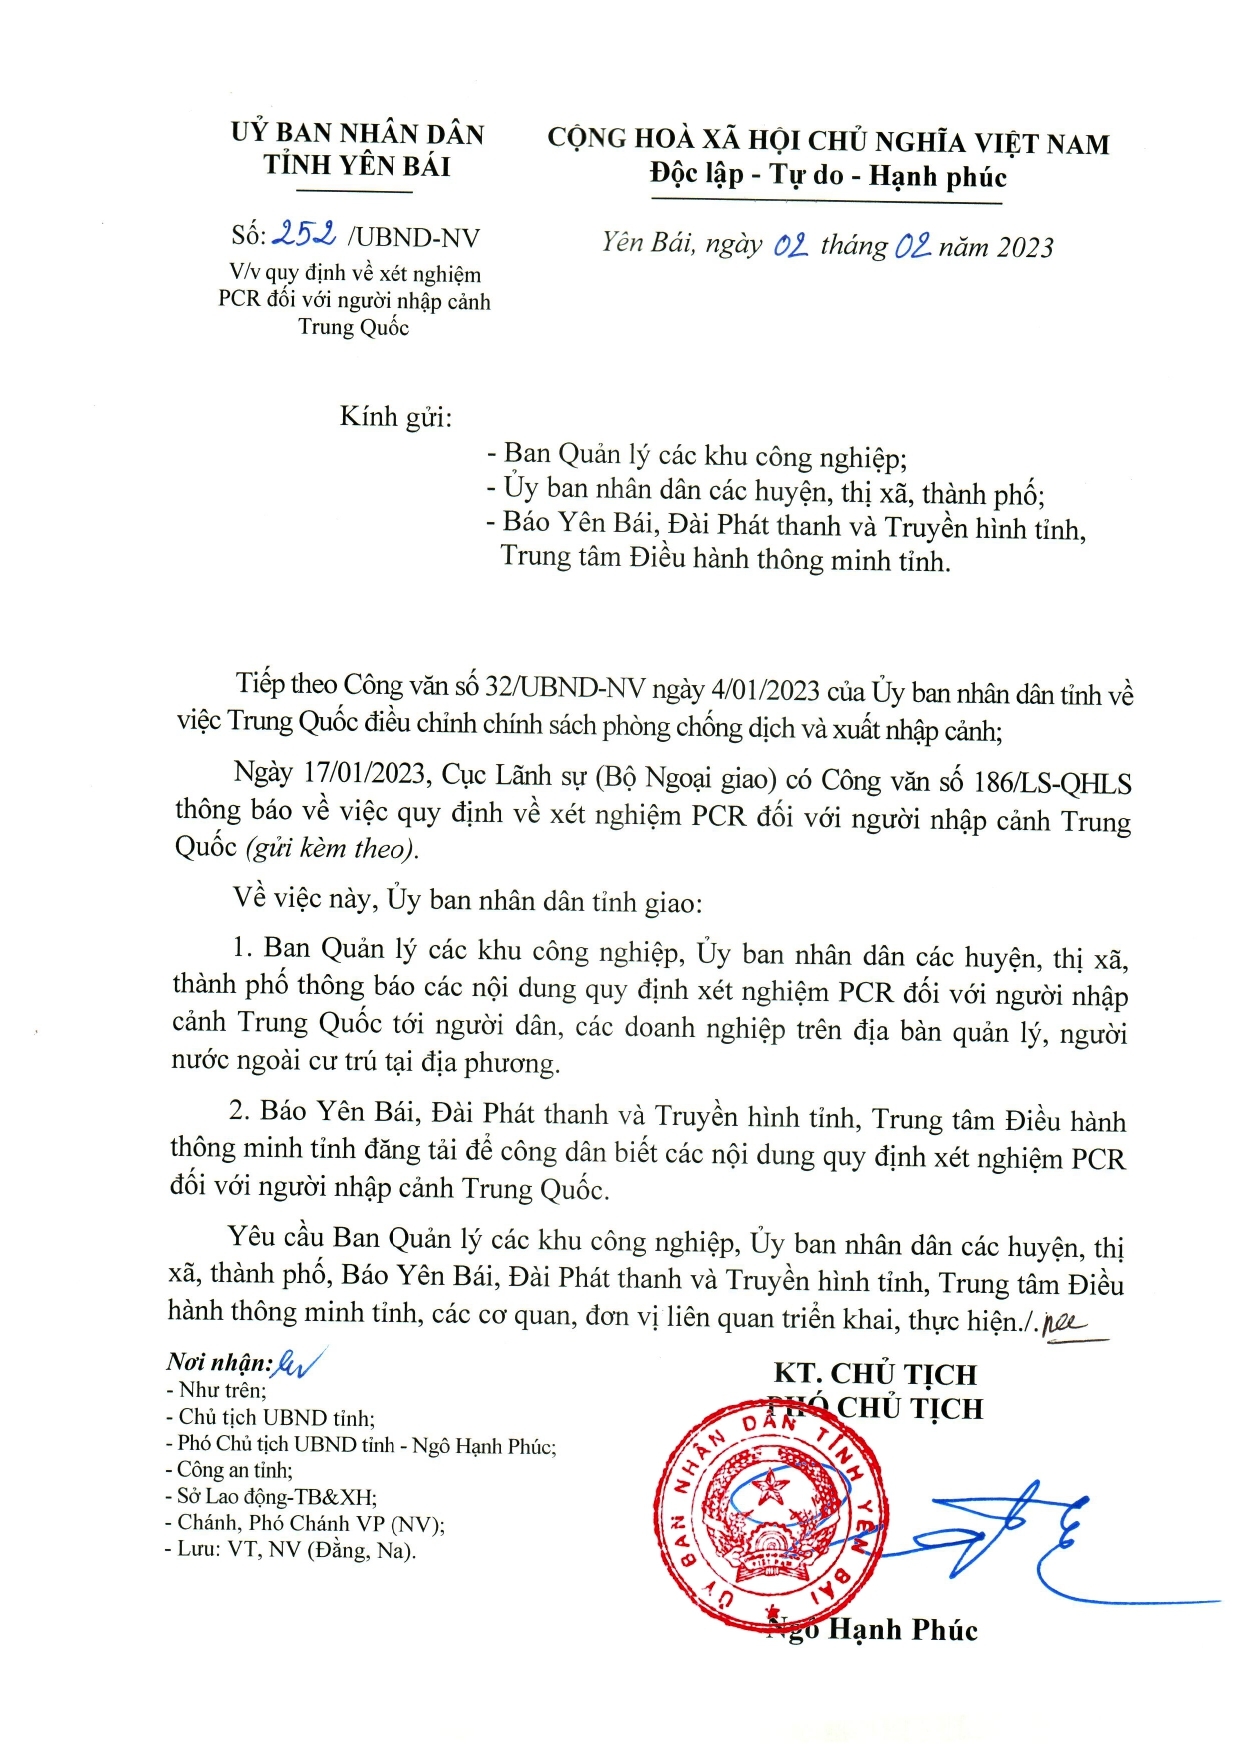 Quy định của UBND tỉnh Yên Bái về xét nghiệm PCR đối với người nhập cảnh Trung Quốc